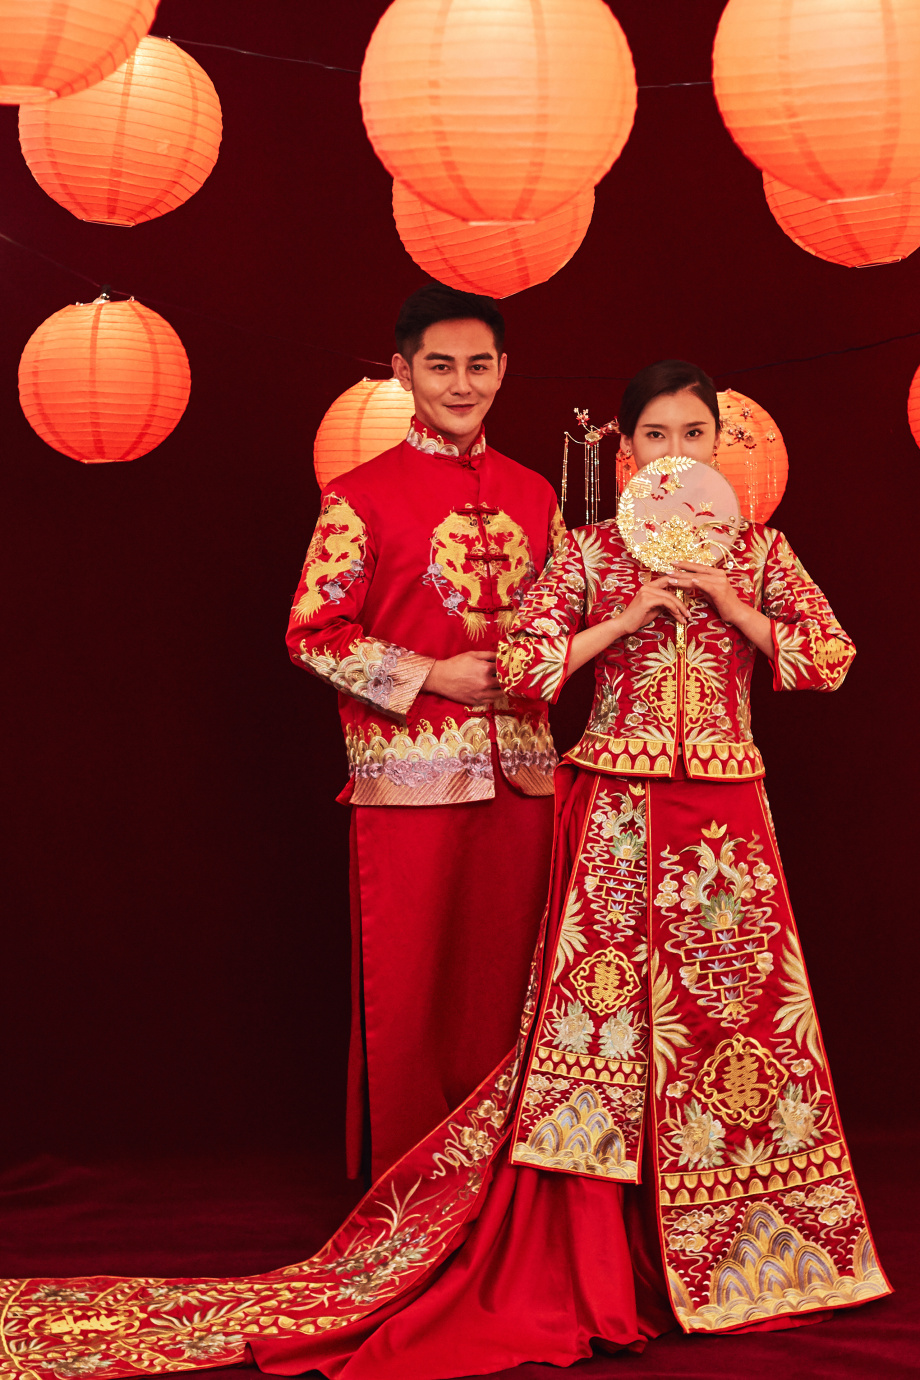 Bạn đang muốn có một bức ảnh cưới đậm chất Trung Quốc? Đừng bỏ lỡ phong cách chụp ảnh cưới Trung Quốc, mang đến sự trang trọng và tình cảm lãng mạn đến bạn và người ấy. Hãy đến và chiêm ngưỡng những tác phẩm nghệ thuật đẹp tuyệt vời tại hình ảnh liên quan.